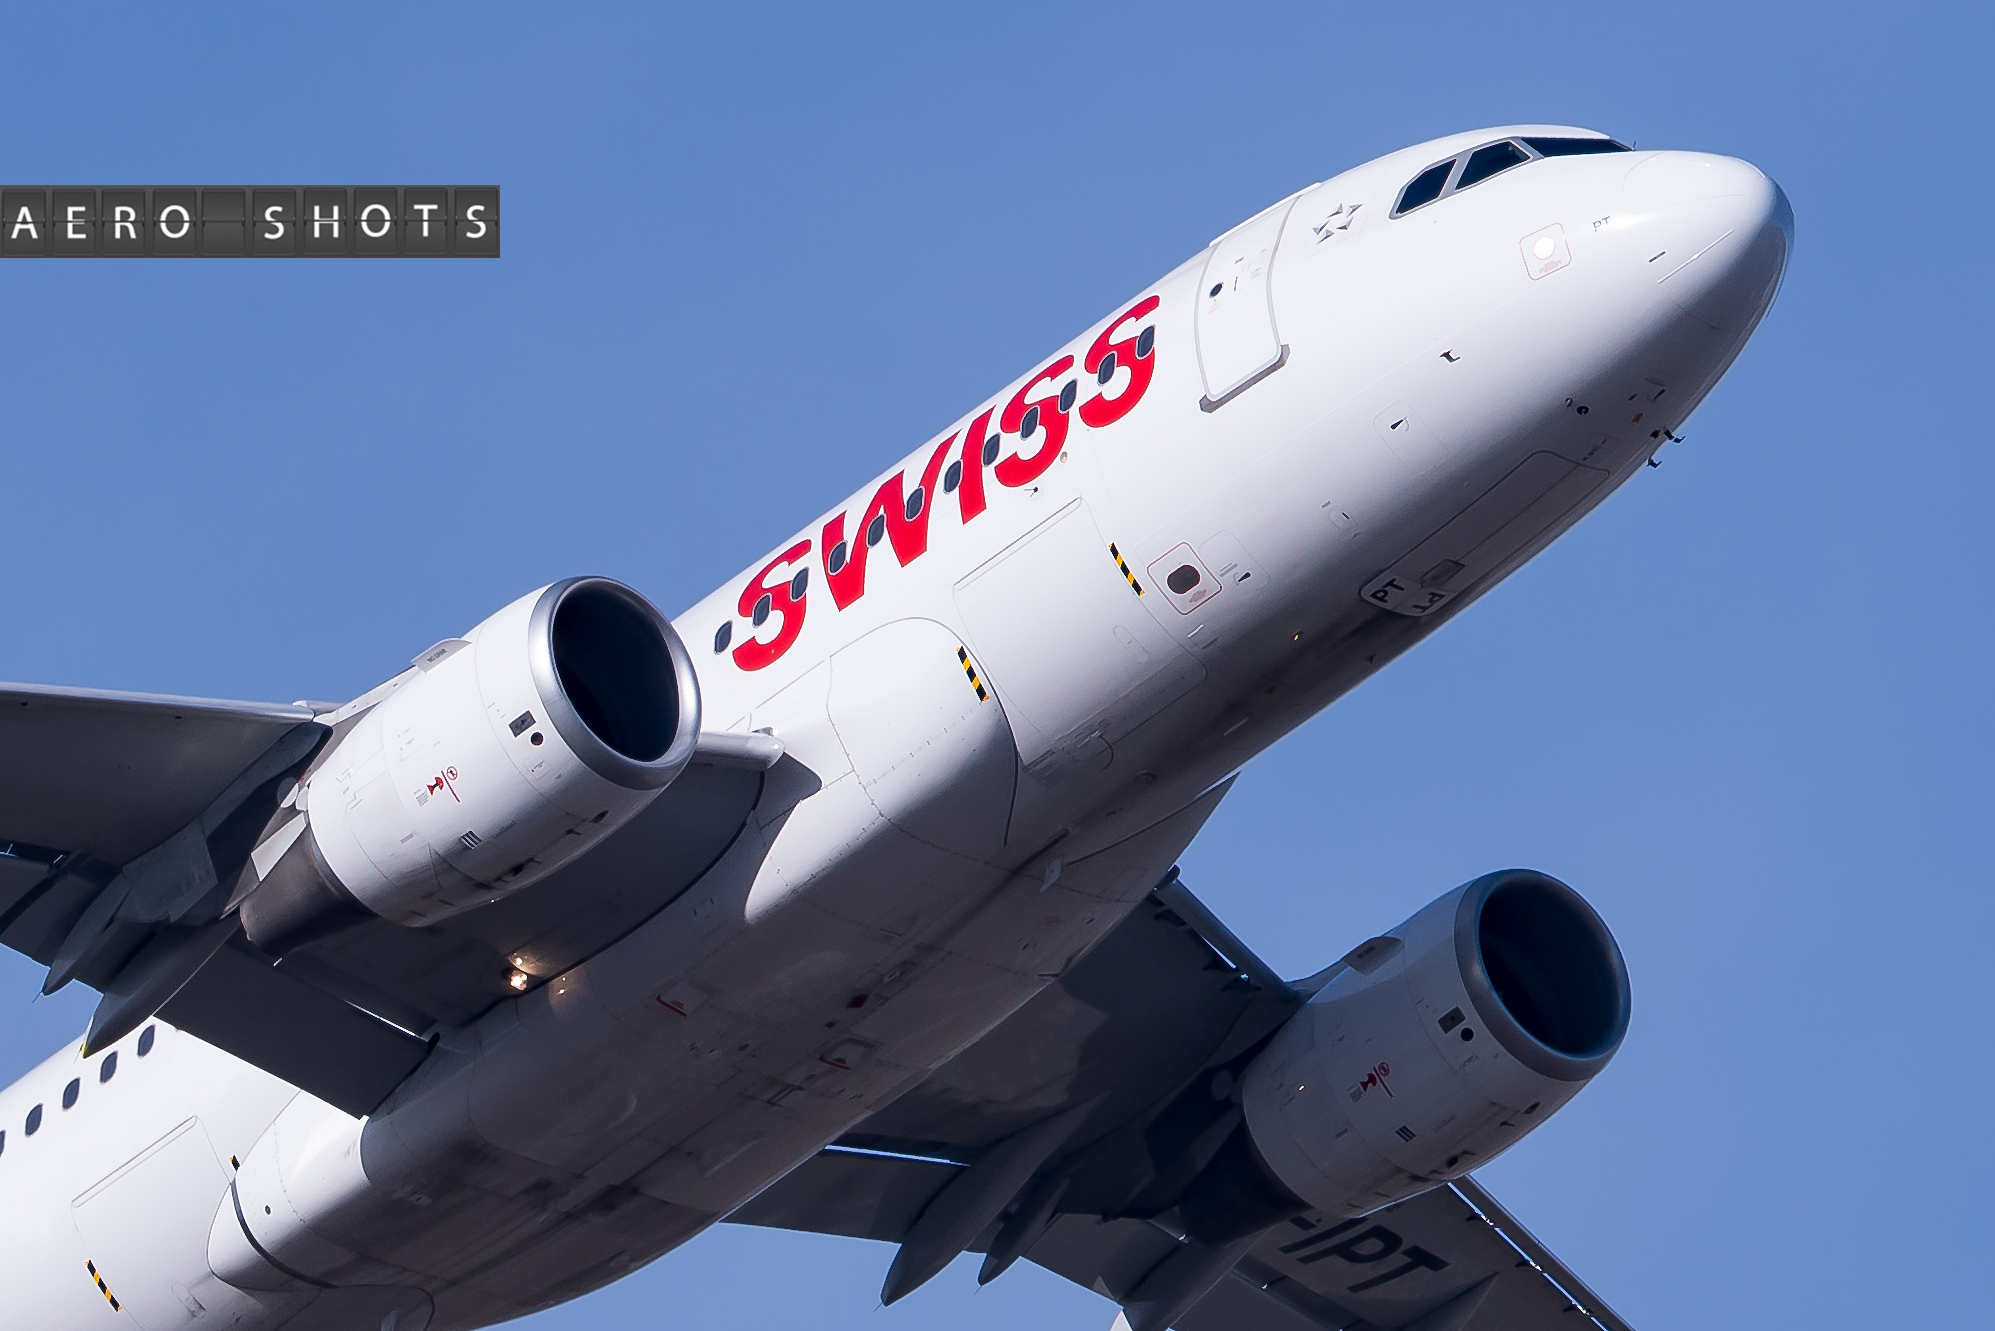 SWISS' A319 departs for Zurich